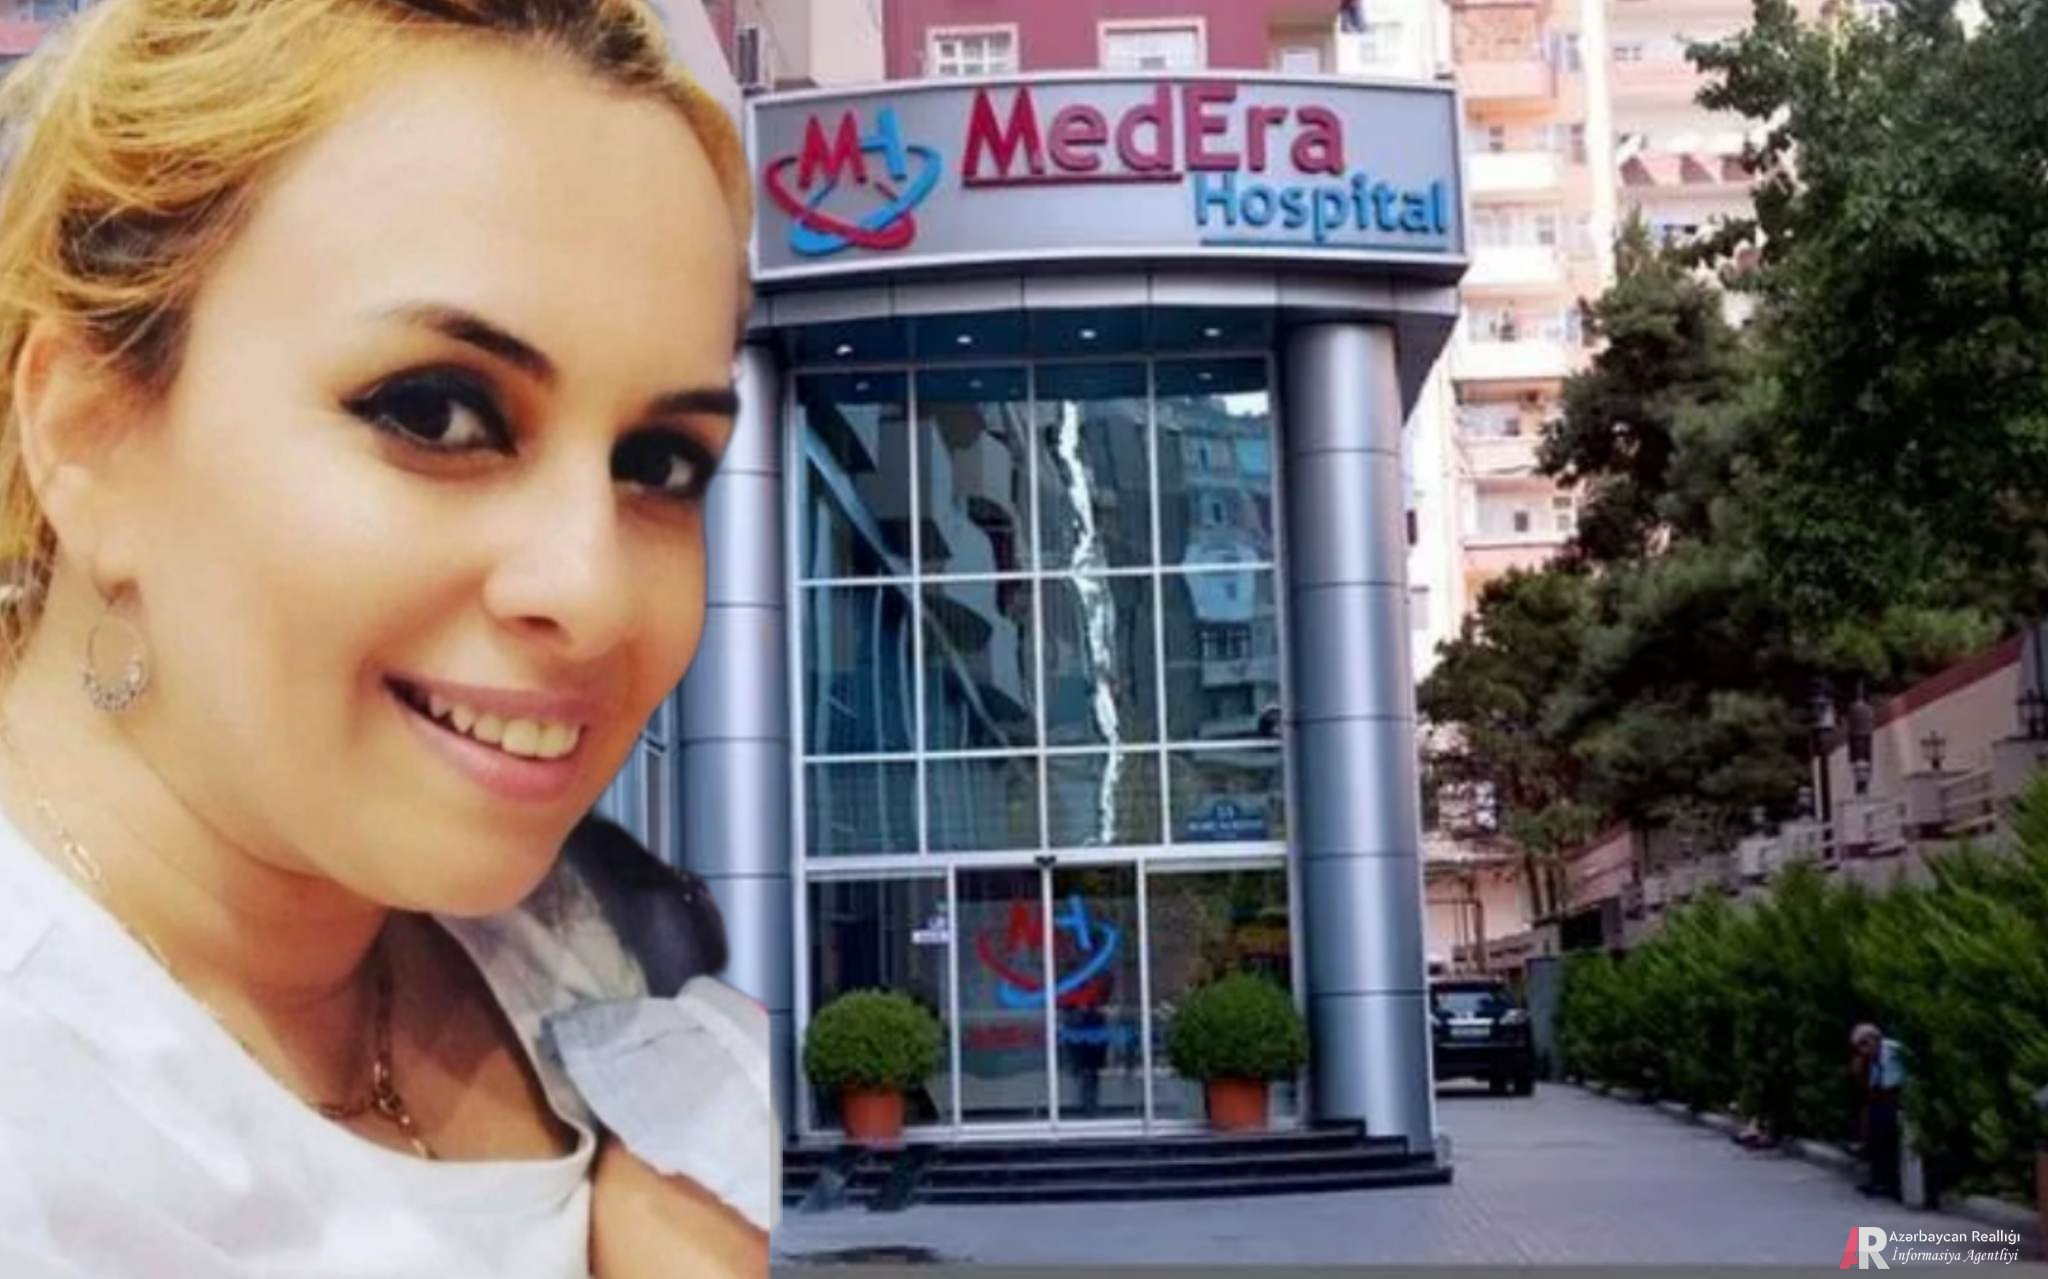 "MedEra" Hospitalda bu dəfə öz işçisi əməliyyat zamanı öldü – Təfərrüat